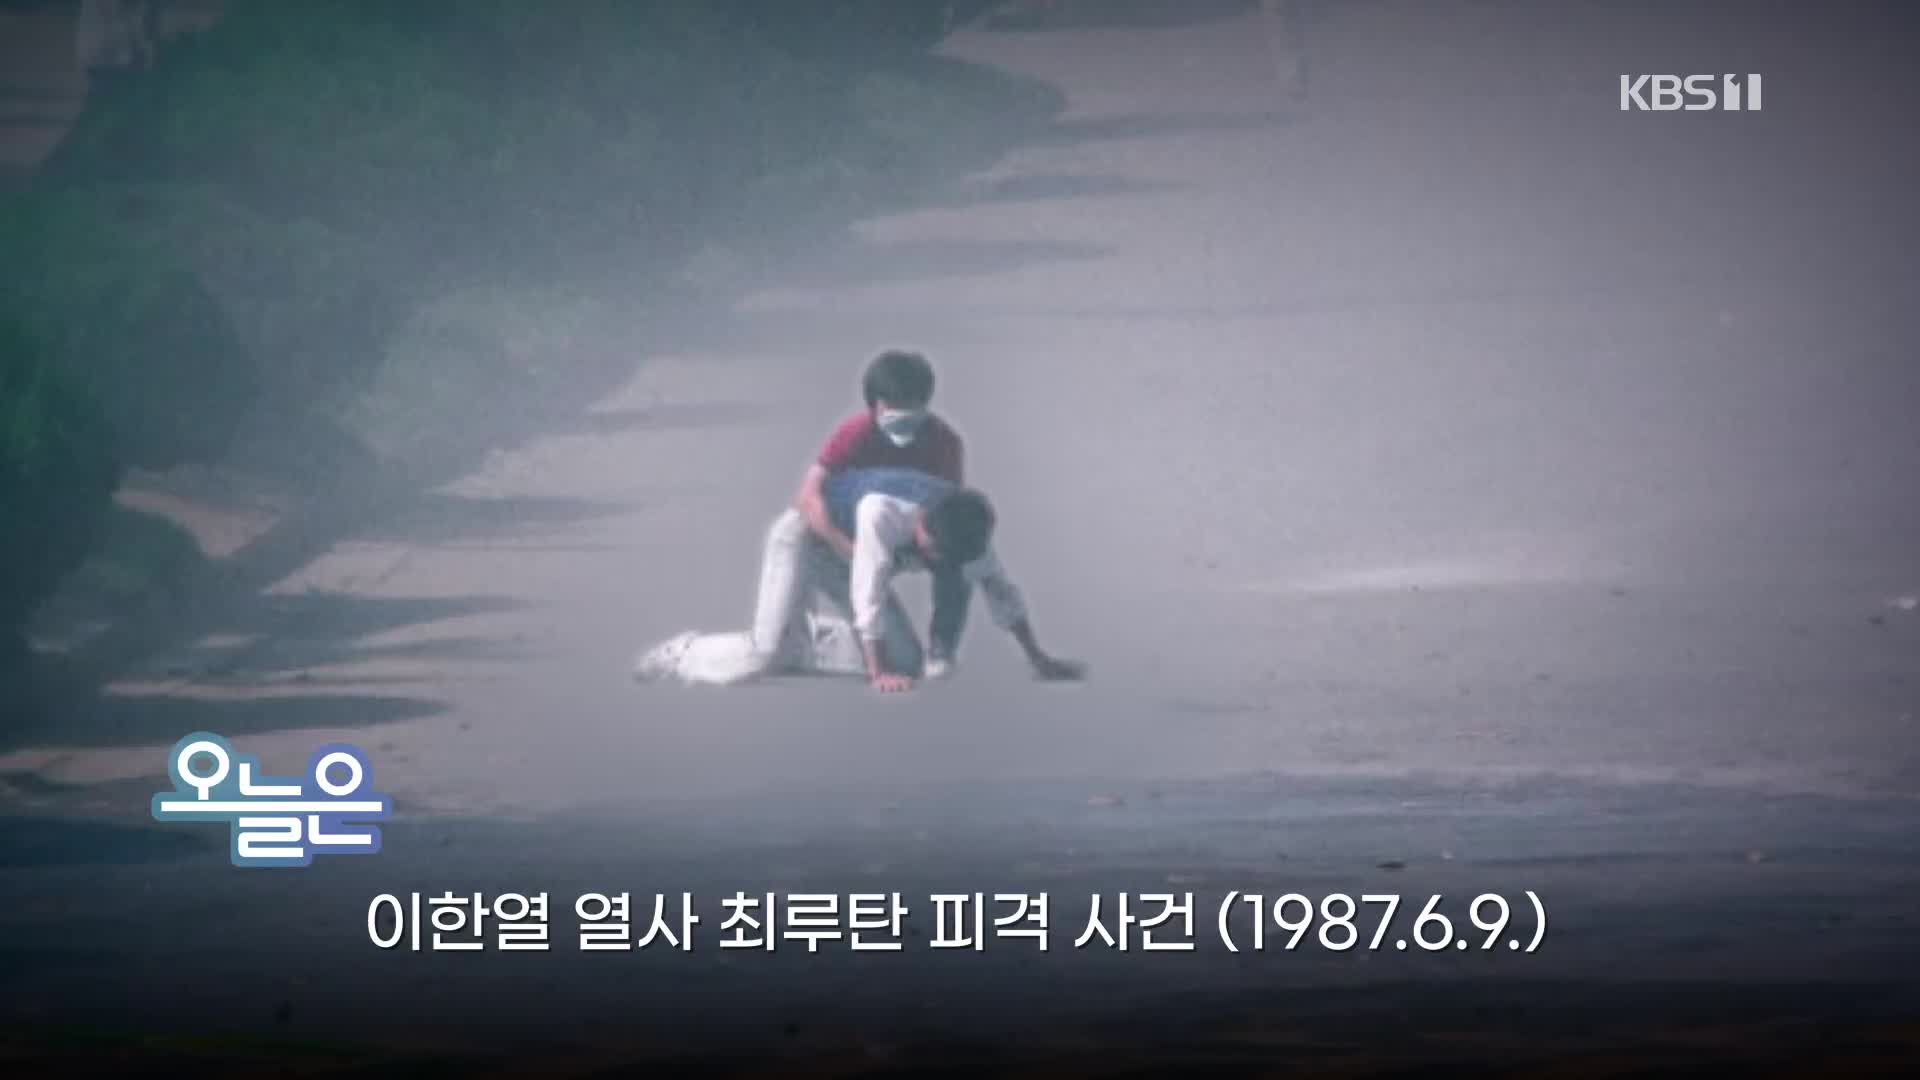 [오늘은] 이한열 열사 최루탄 피격 사건(1987.6.9.)